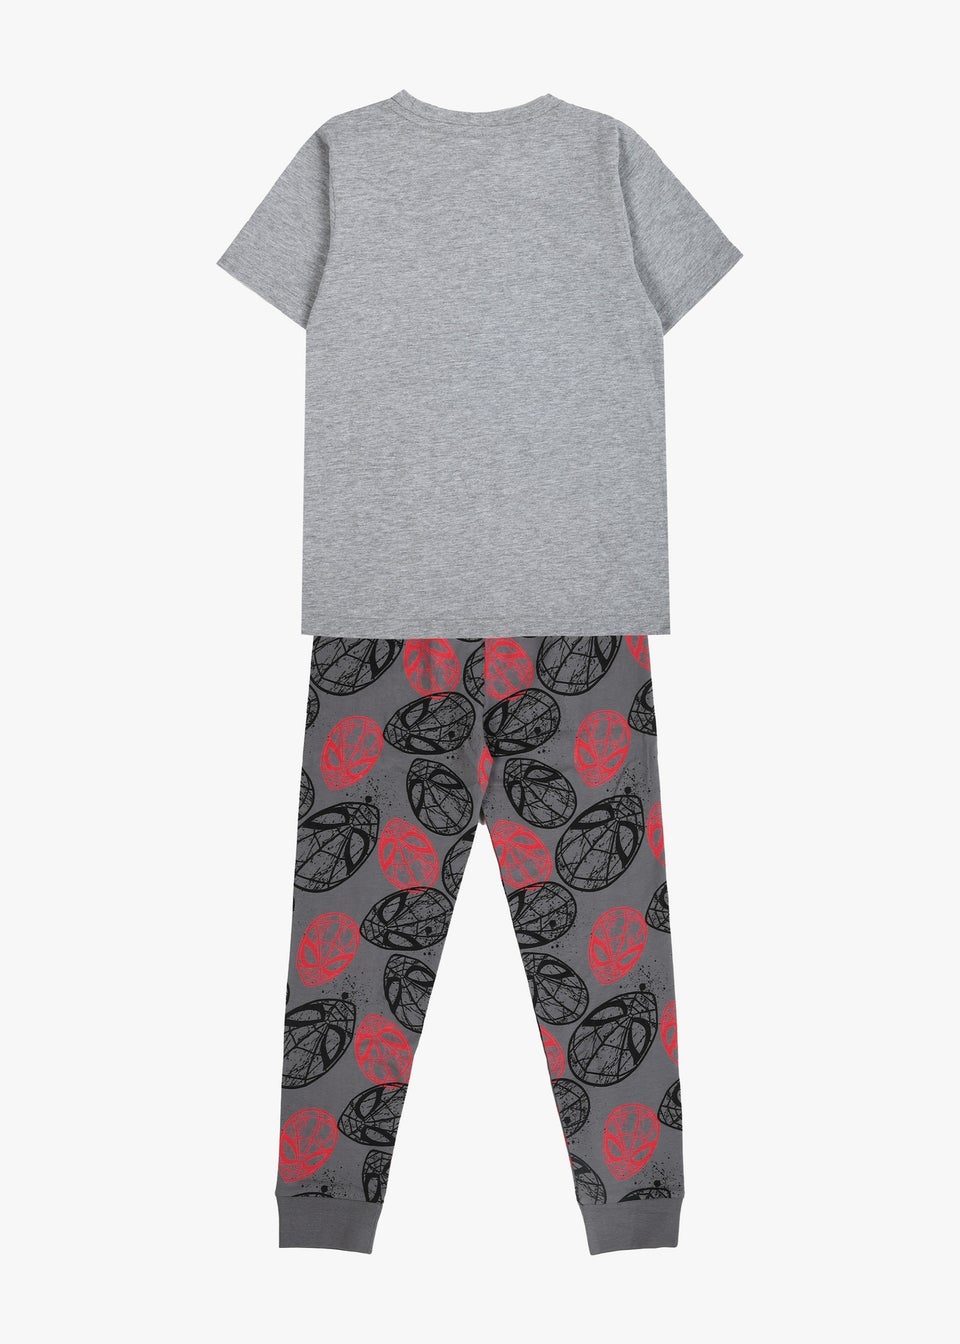 Spiderman Boys Pyjamas